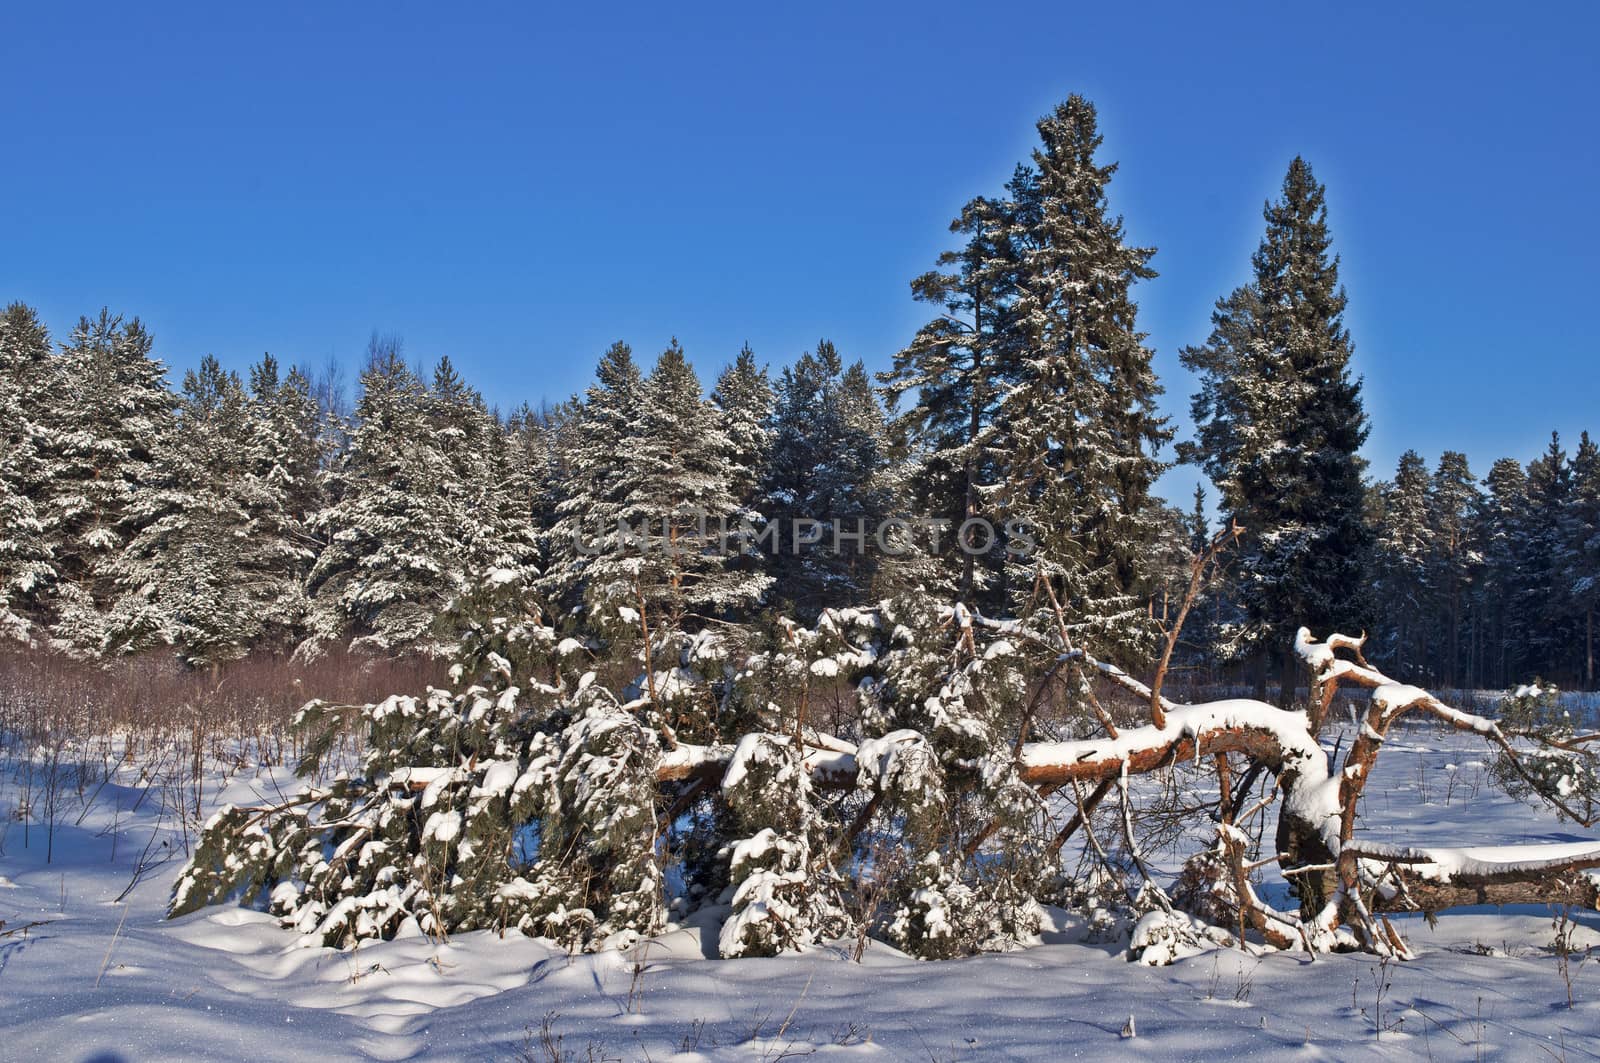 Fallen pine tree in winter forest by wander